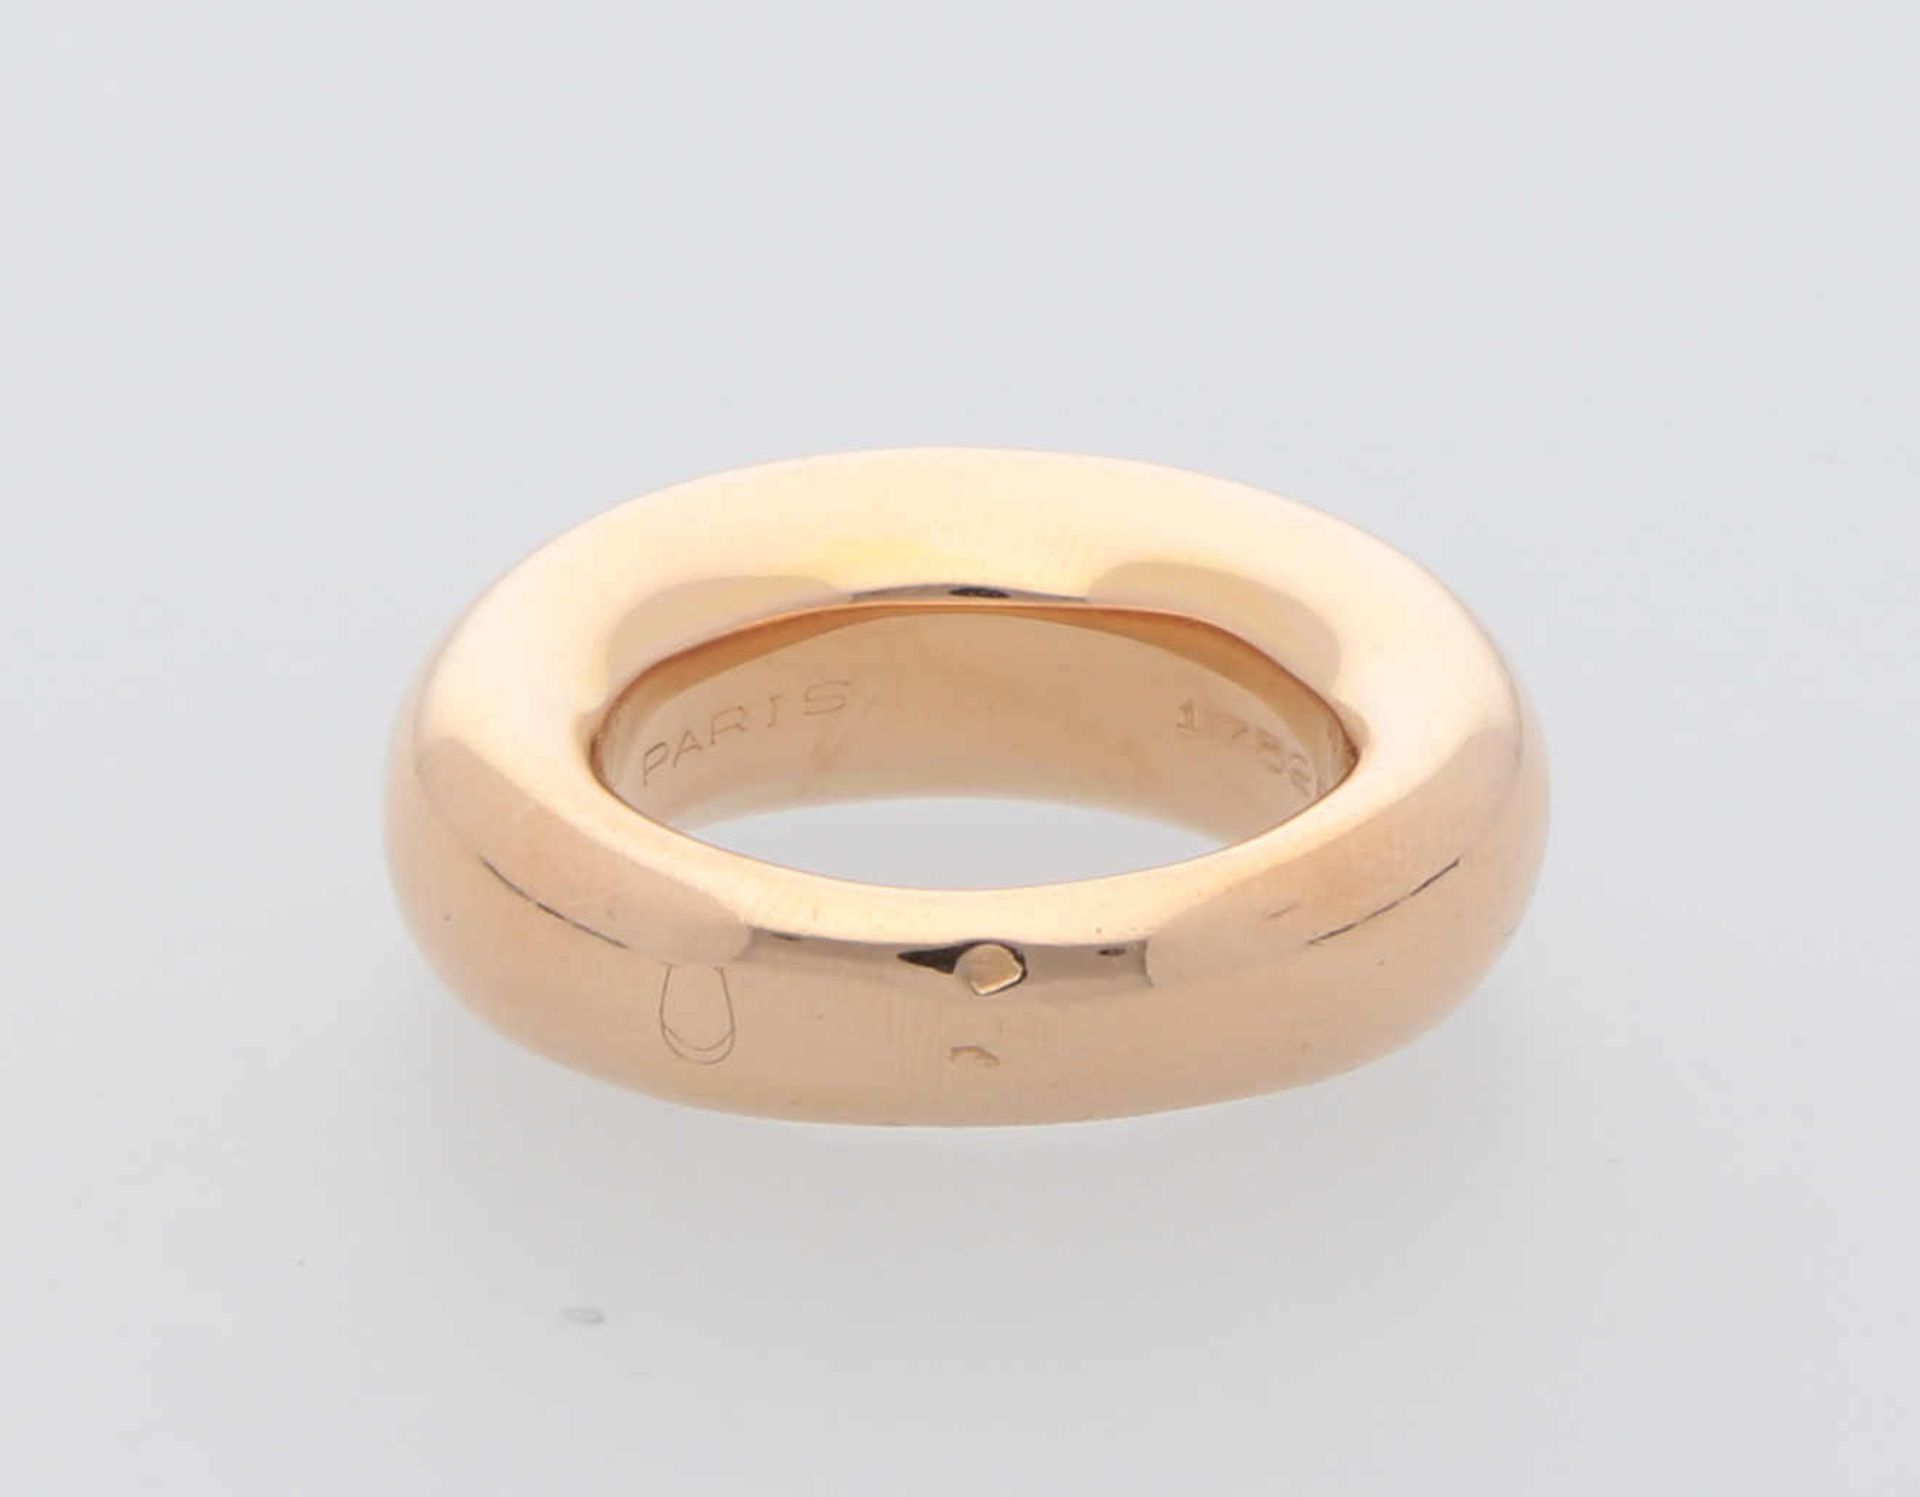 CHAUMET Ring Neuwertiger Ring in Roségold 18K edel bombiert und poliert, Ringgrösse 52, 12,2 g, - Bild 3 aus 3